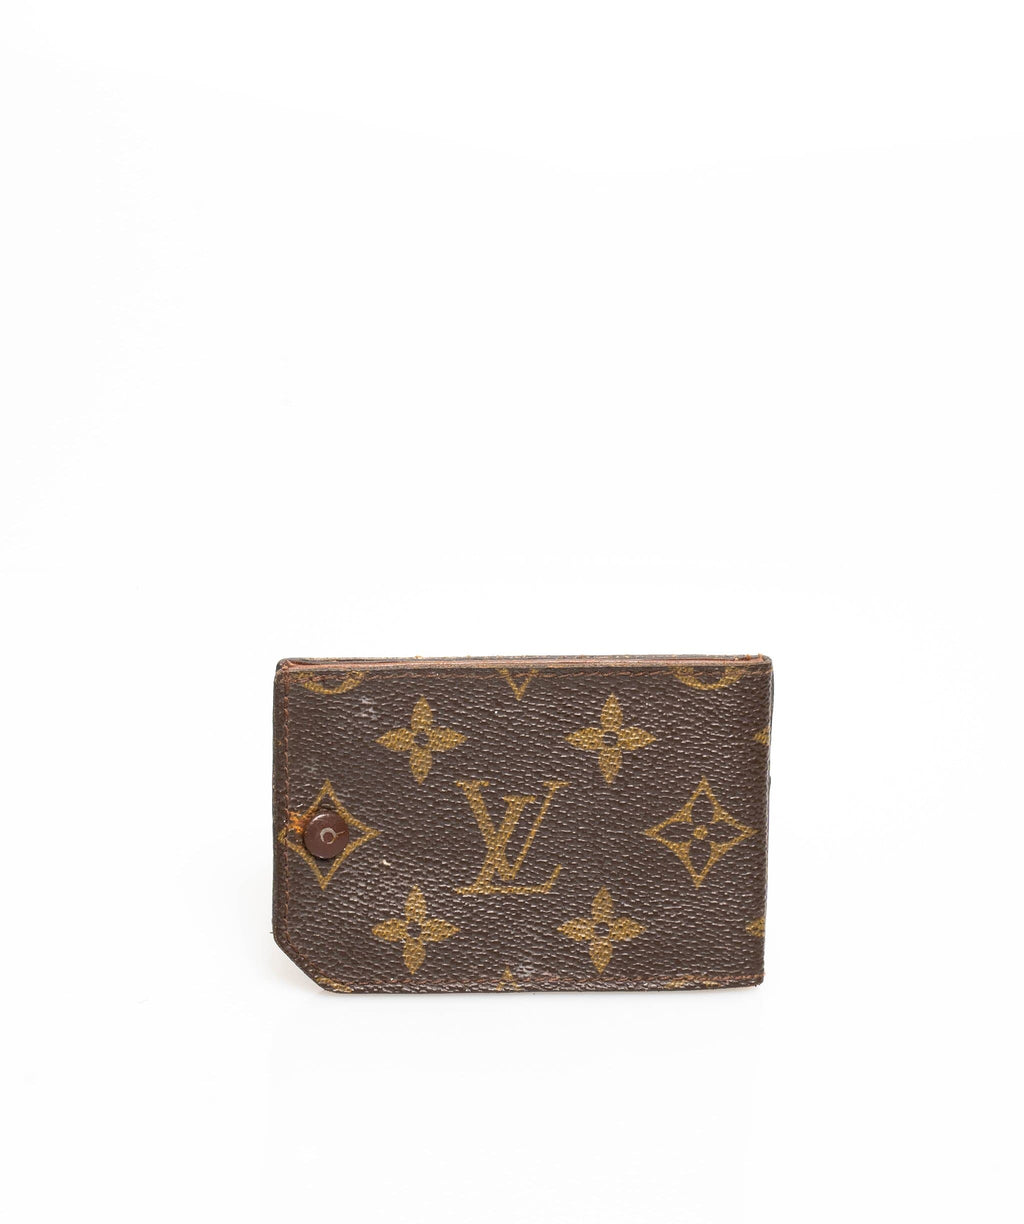 Louis Vuitton - Accessories, Money clips